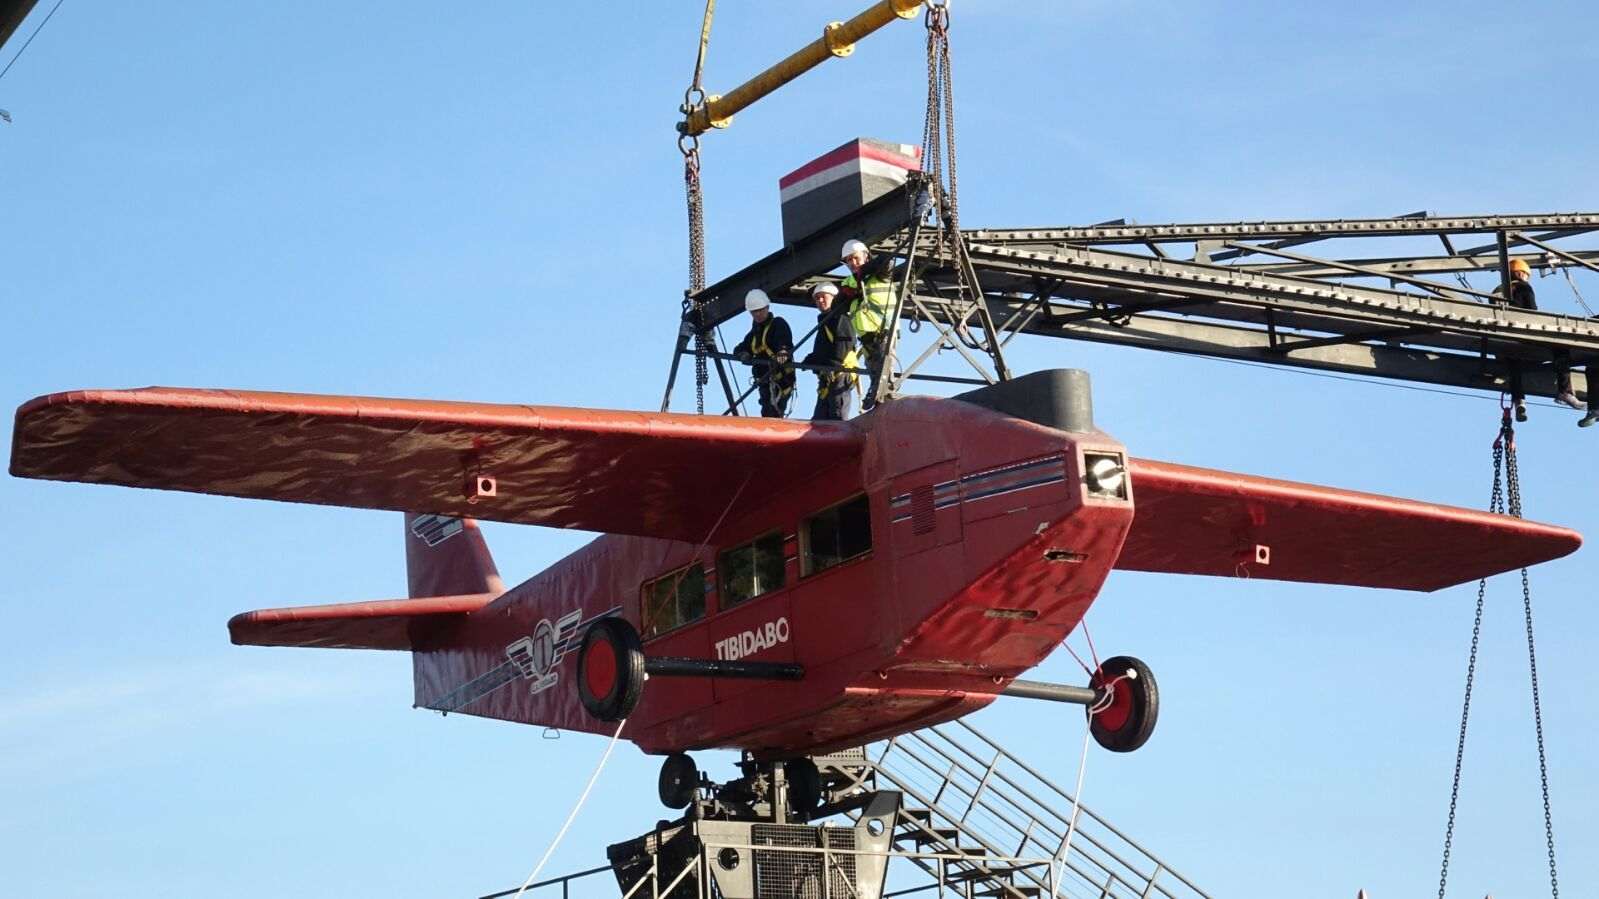 Desmontan el histórico avión del Tibidabo para repararlo